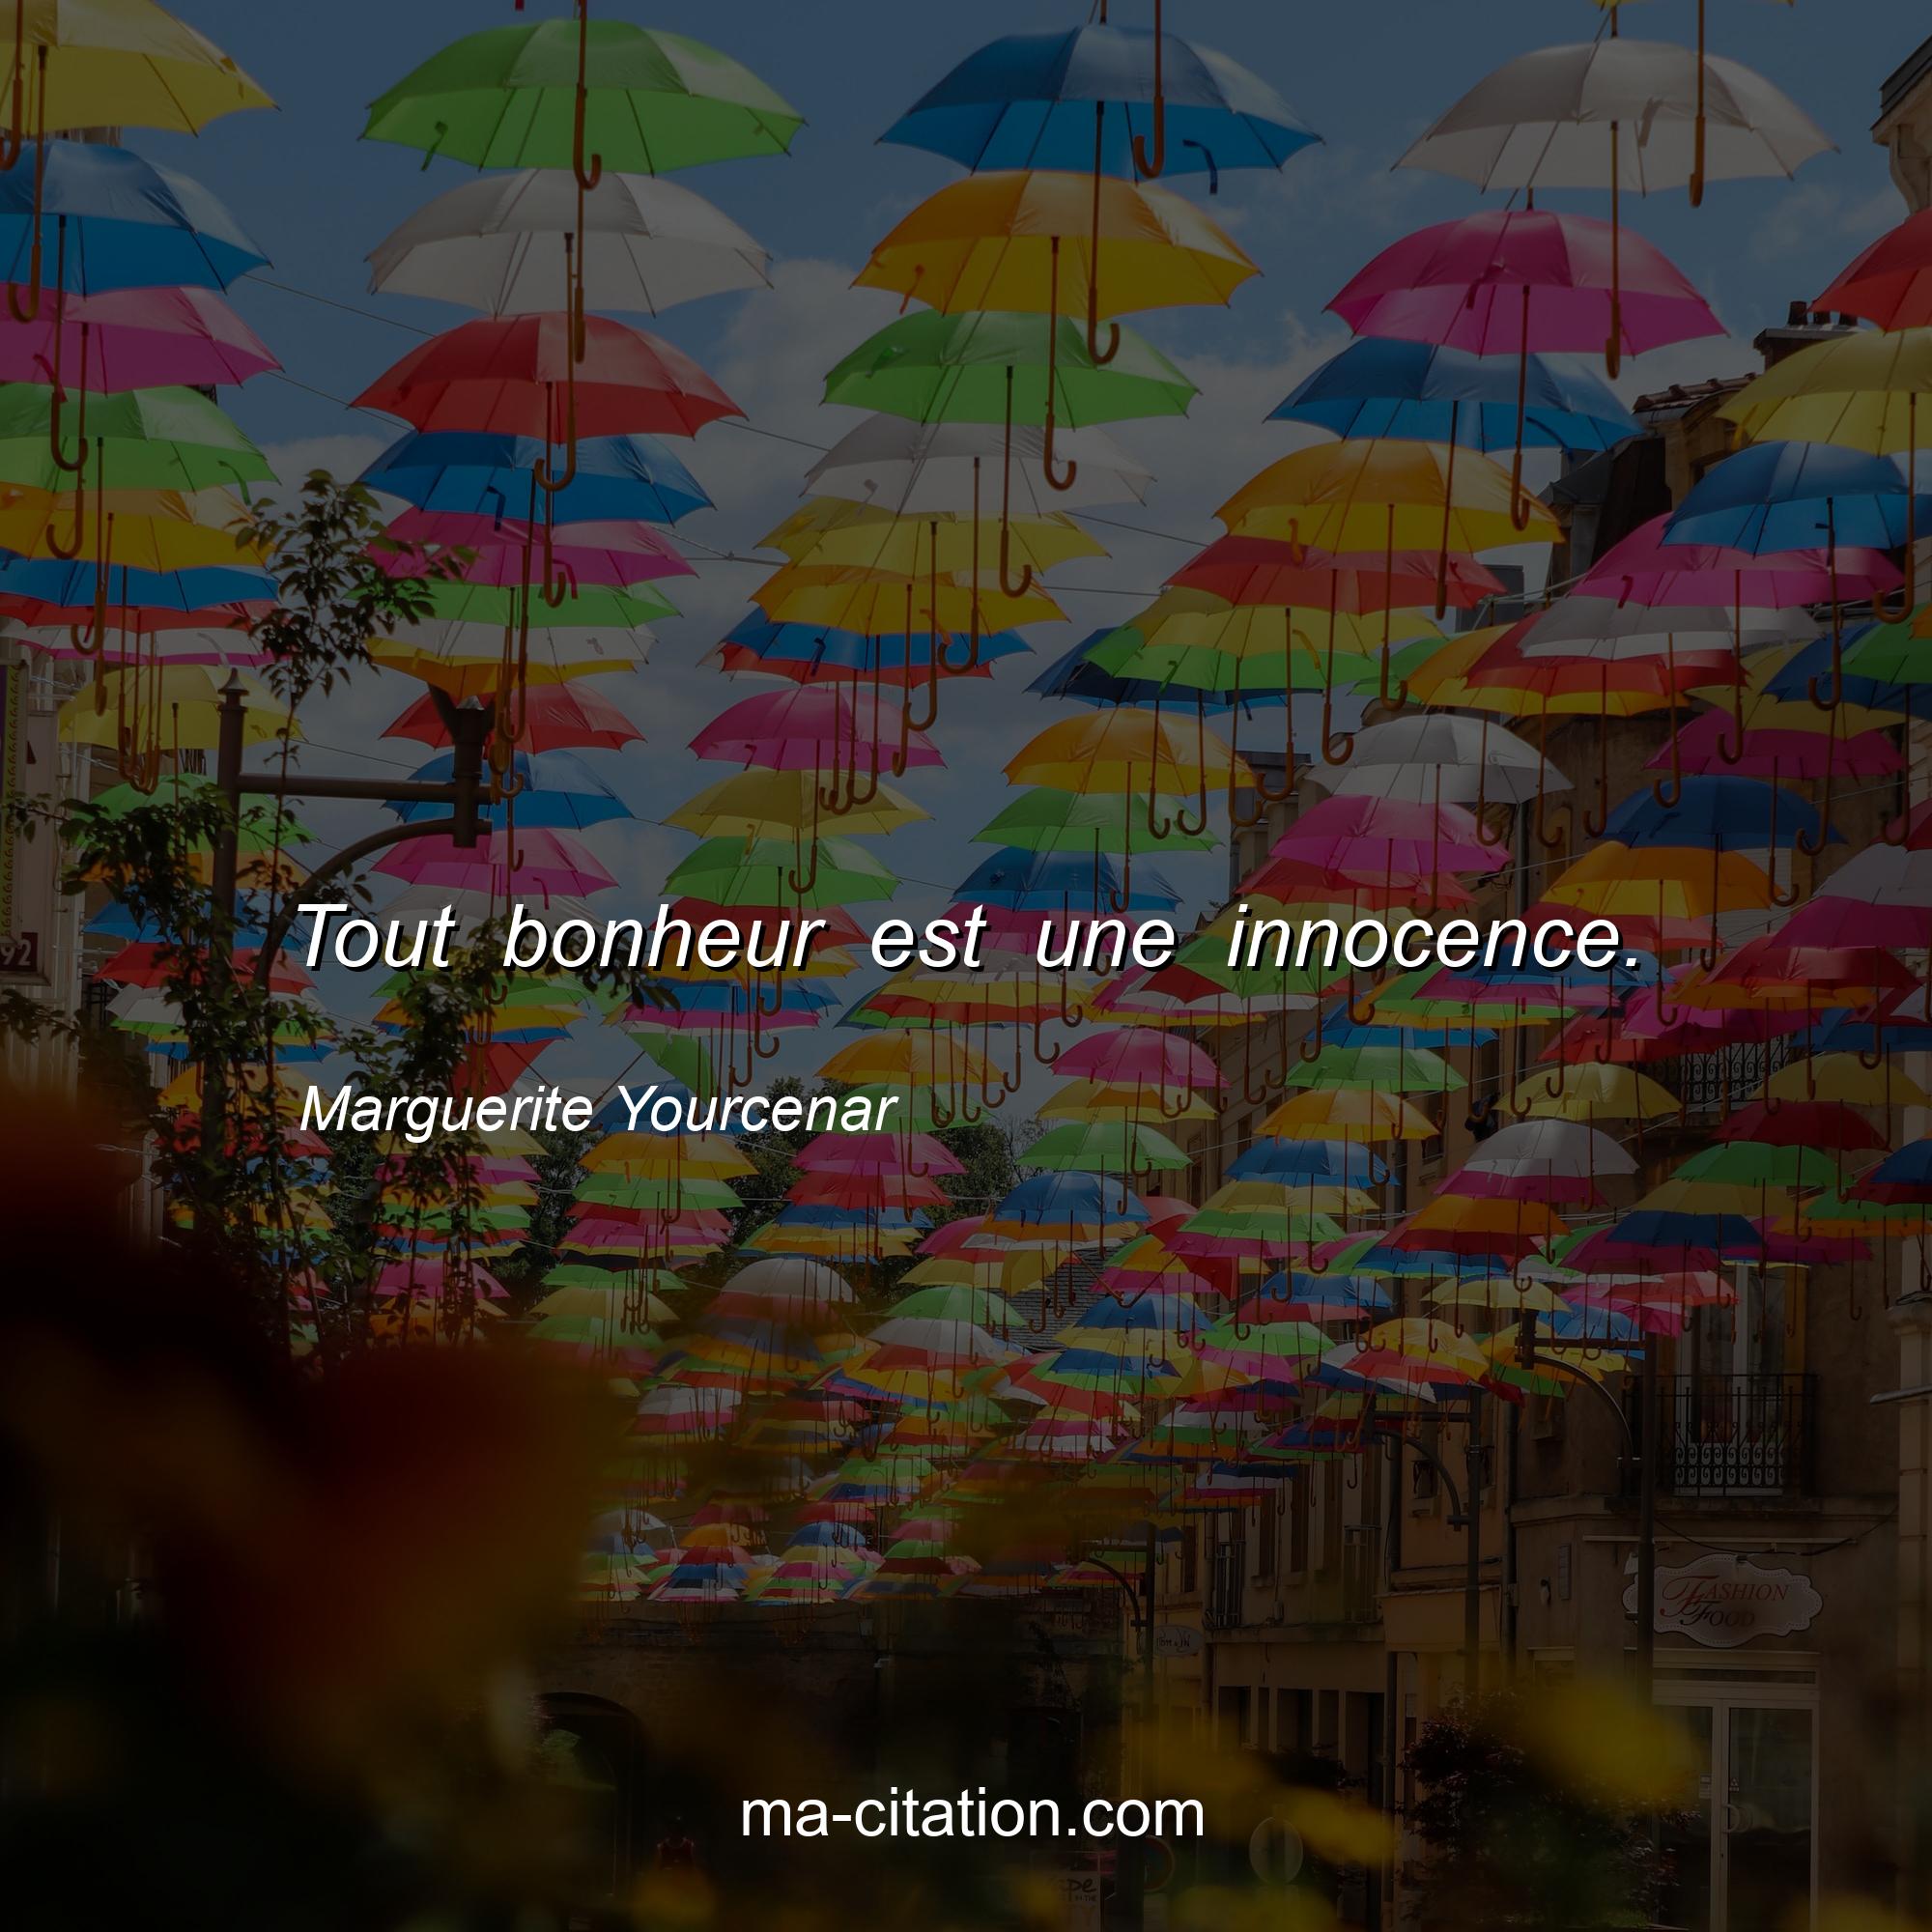 Marguerite Yourcenar : Tout bonheur est une innocence.